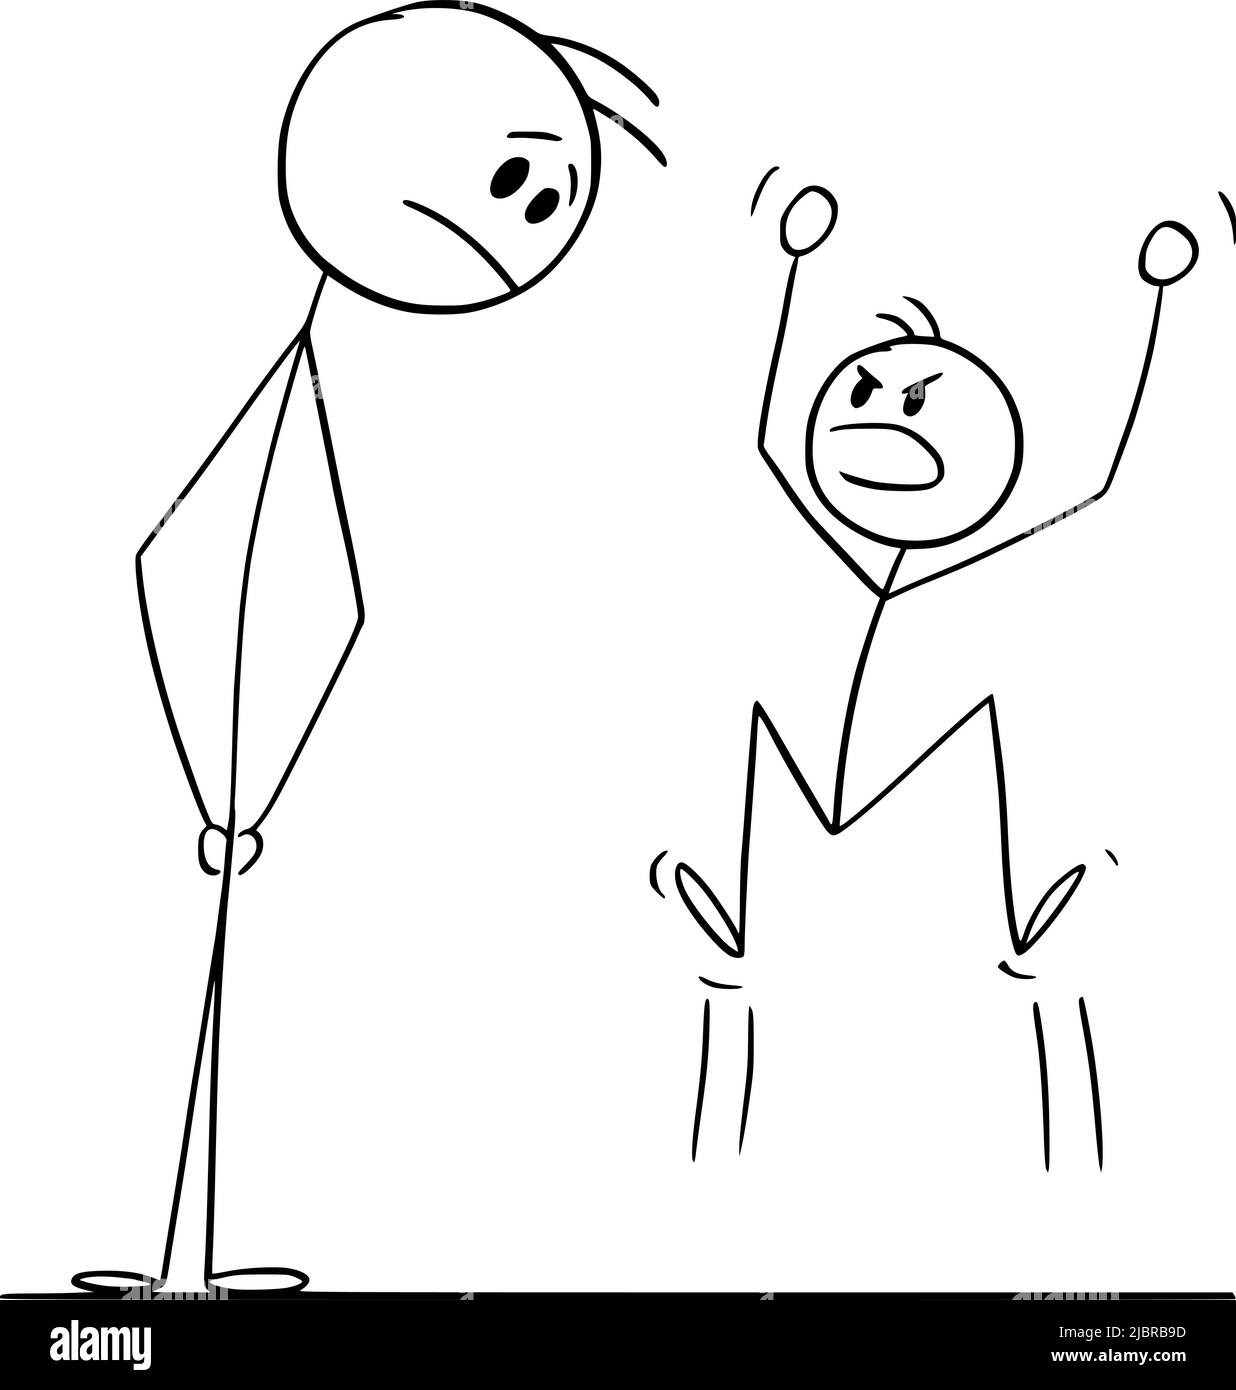 Padre Mirando a Niño o Niño enojado o Resentful , Vector Cartoon Stick Ilustración de la Figura Ilustración del Vector